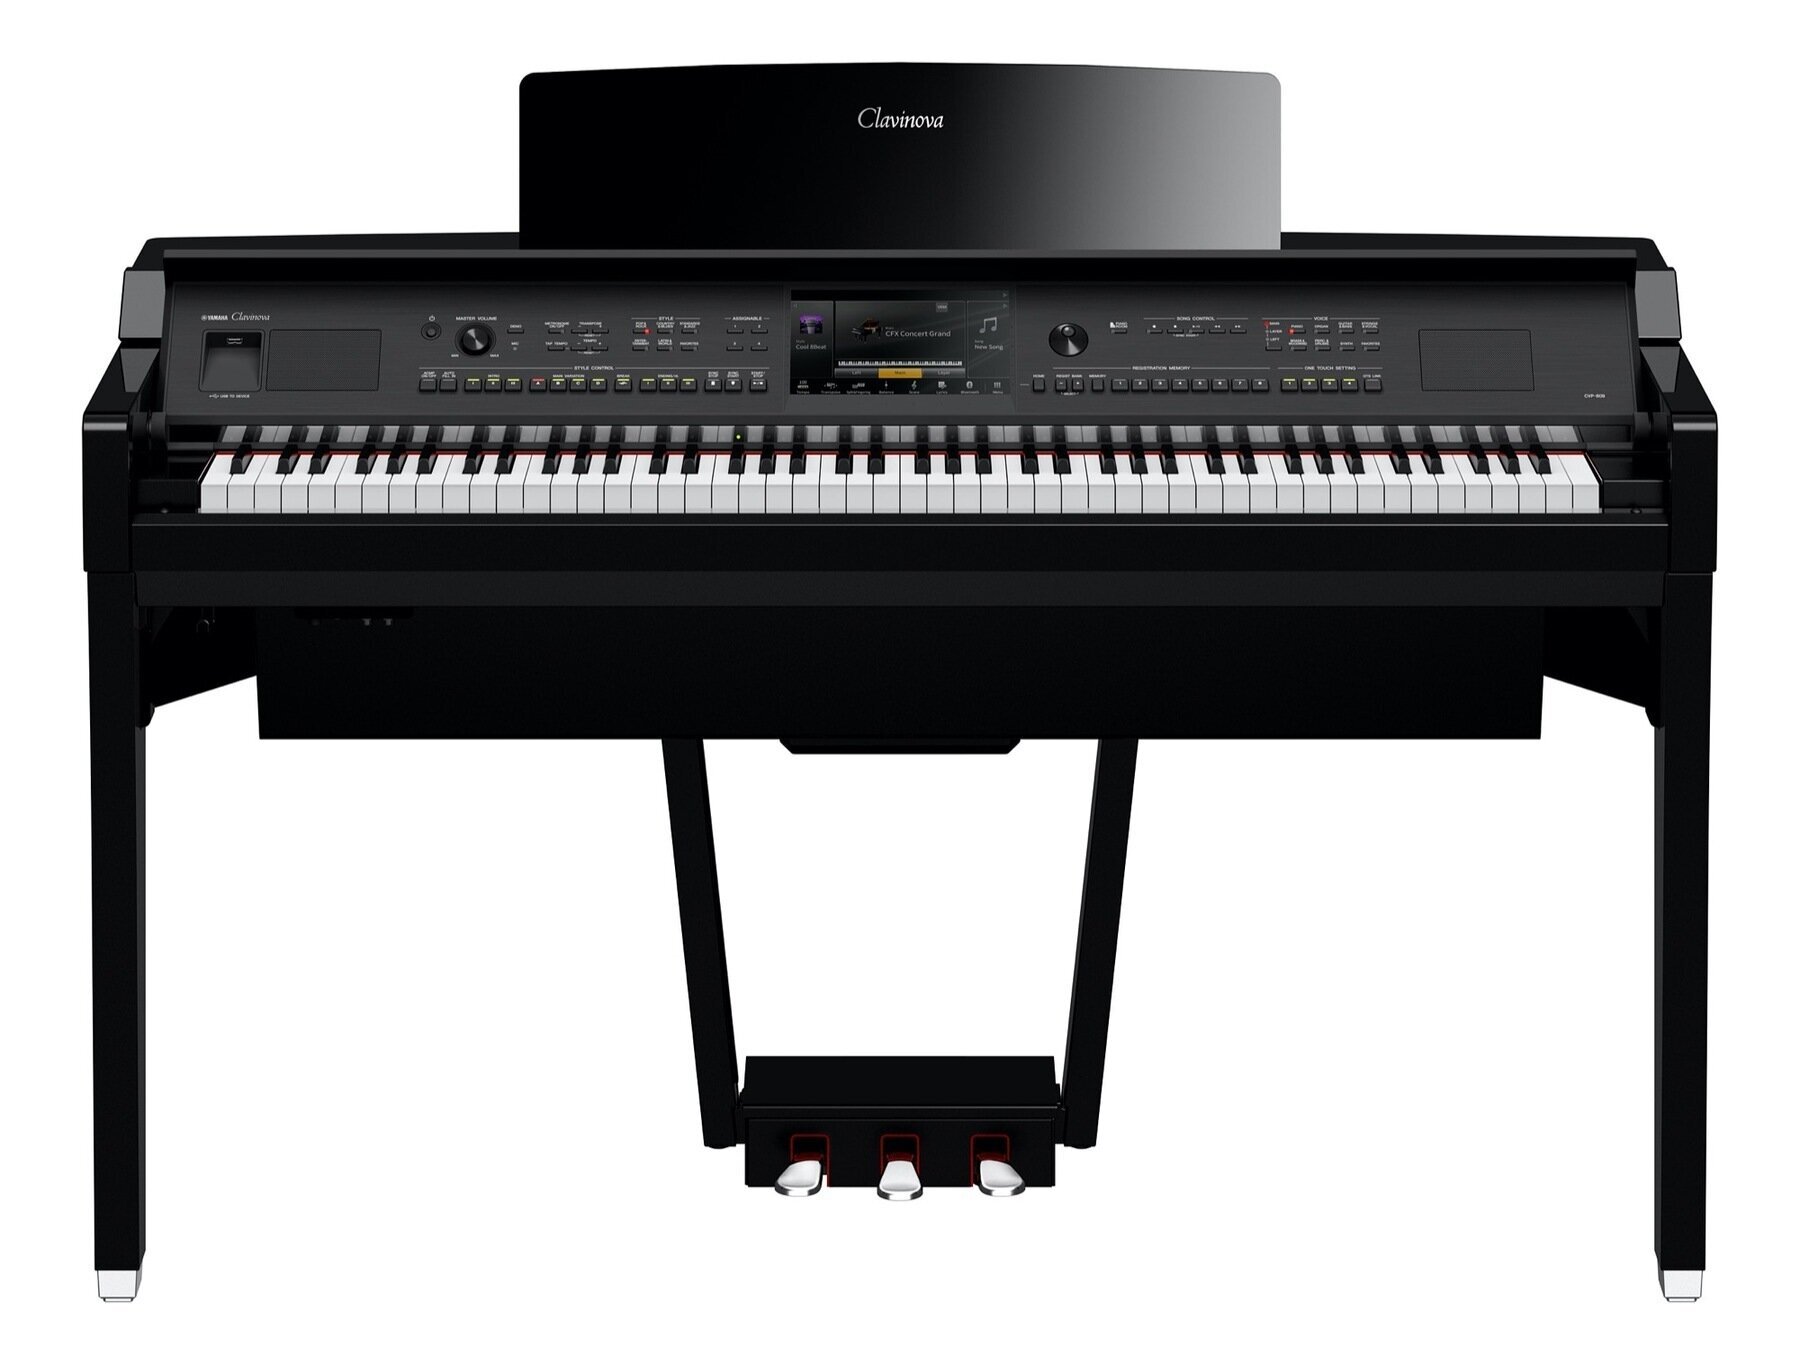 Ψηφιακό Πιάνο Yamaha CVP 809 Polished Ebony Ψηφιακό Πιάνο